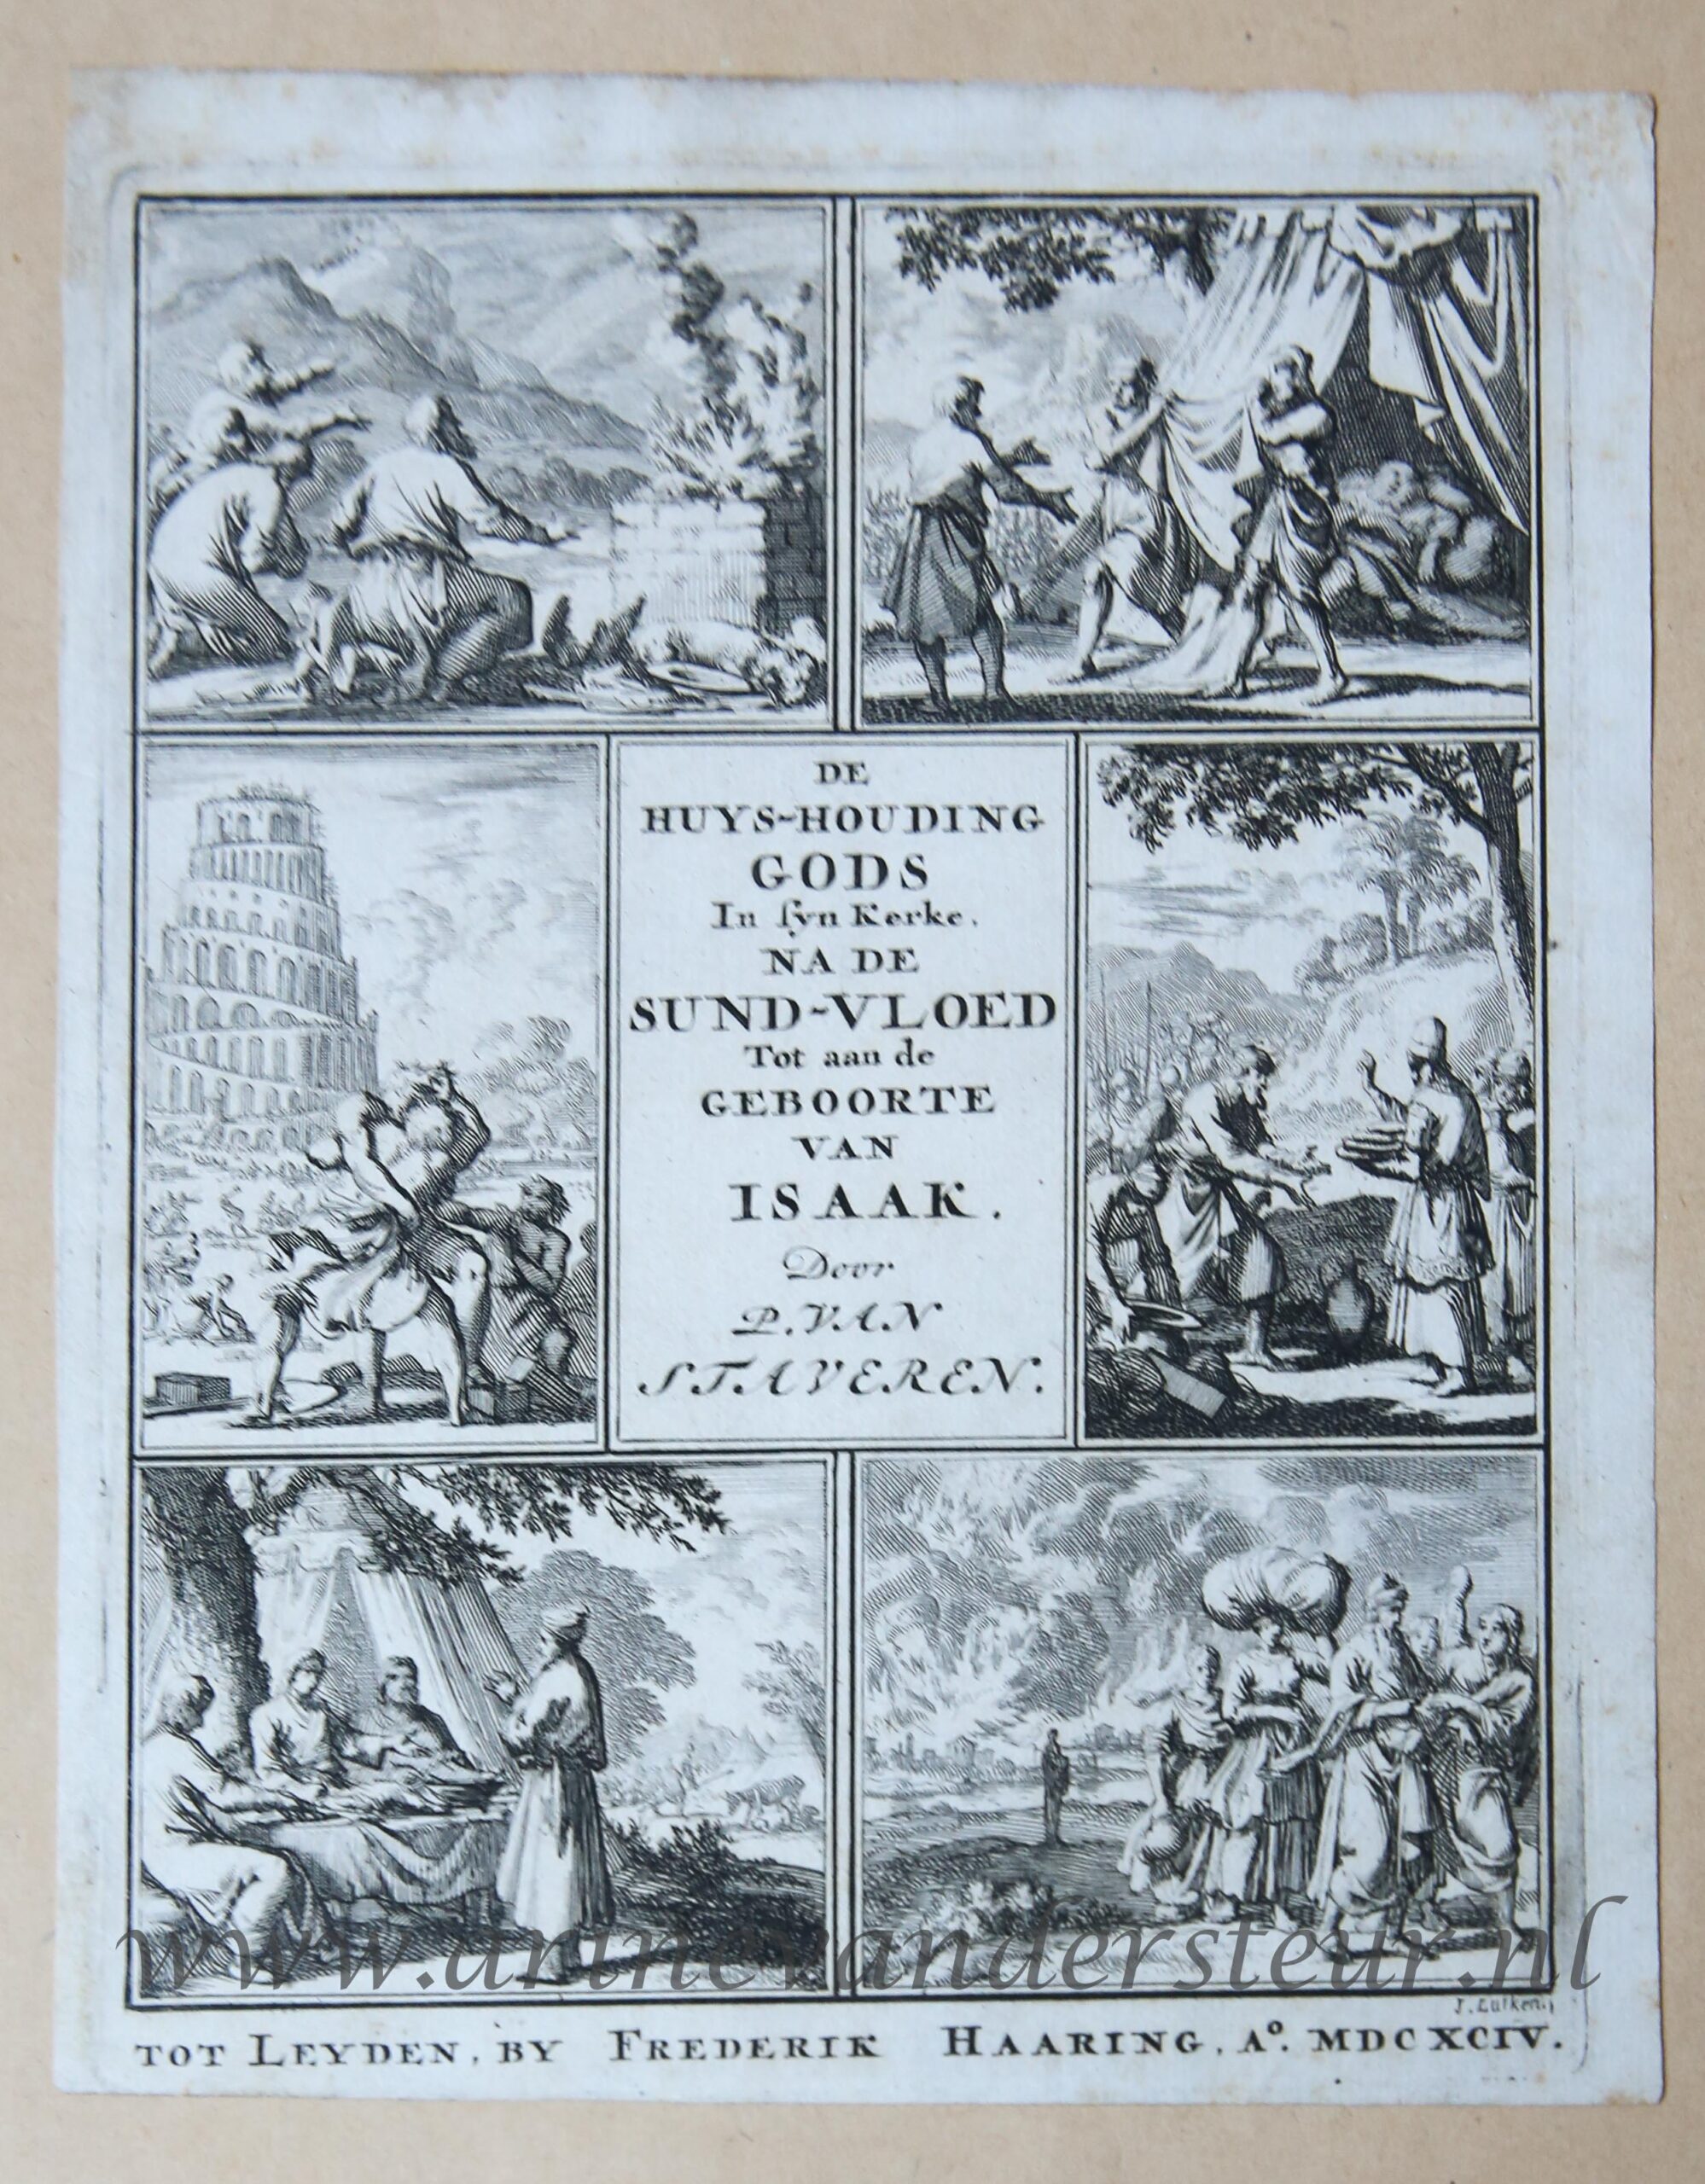 [Antique title page, 1694] De huyshoudinge Gods in sĳn kerke, na de sundvloed tot aan de geboorte van Isaak, published 1694, 1 p.